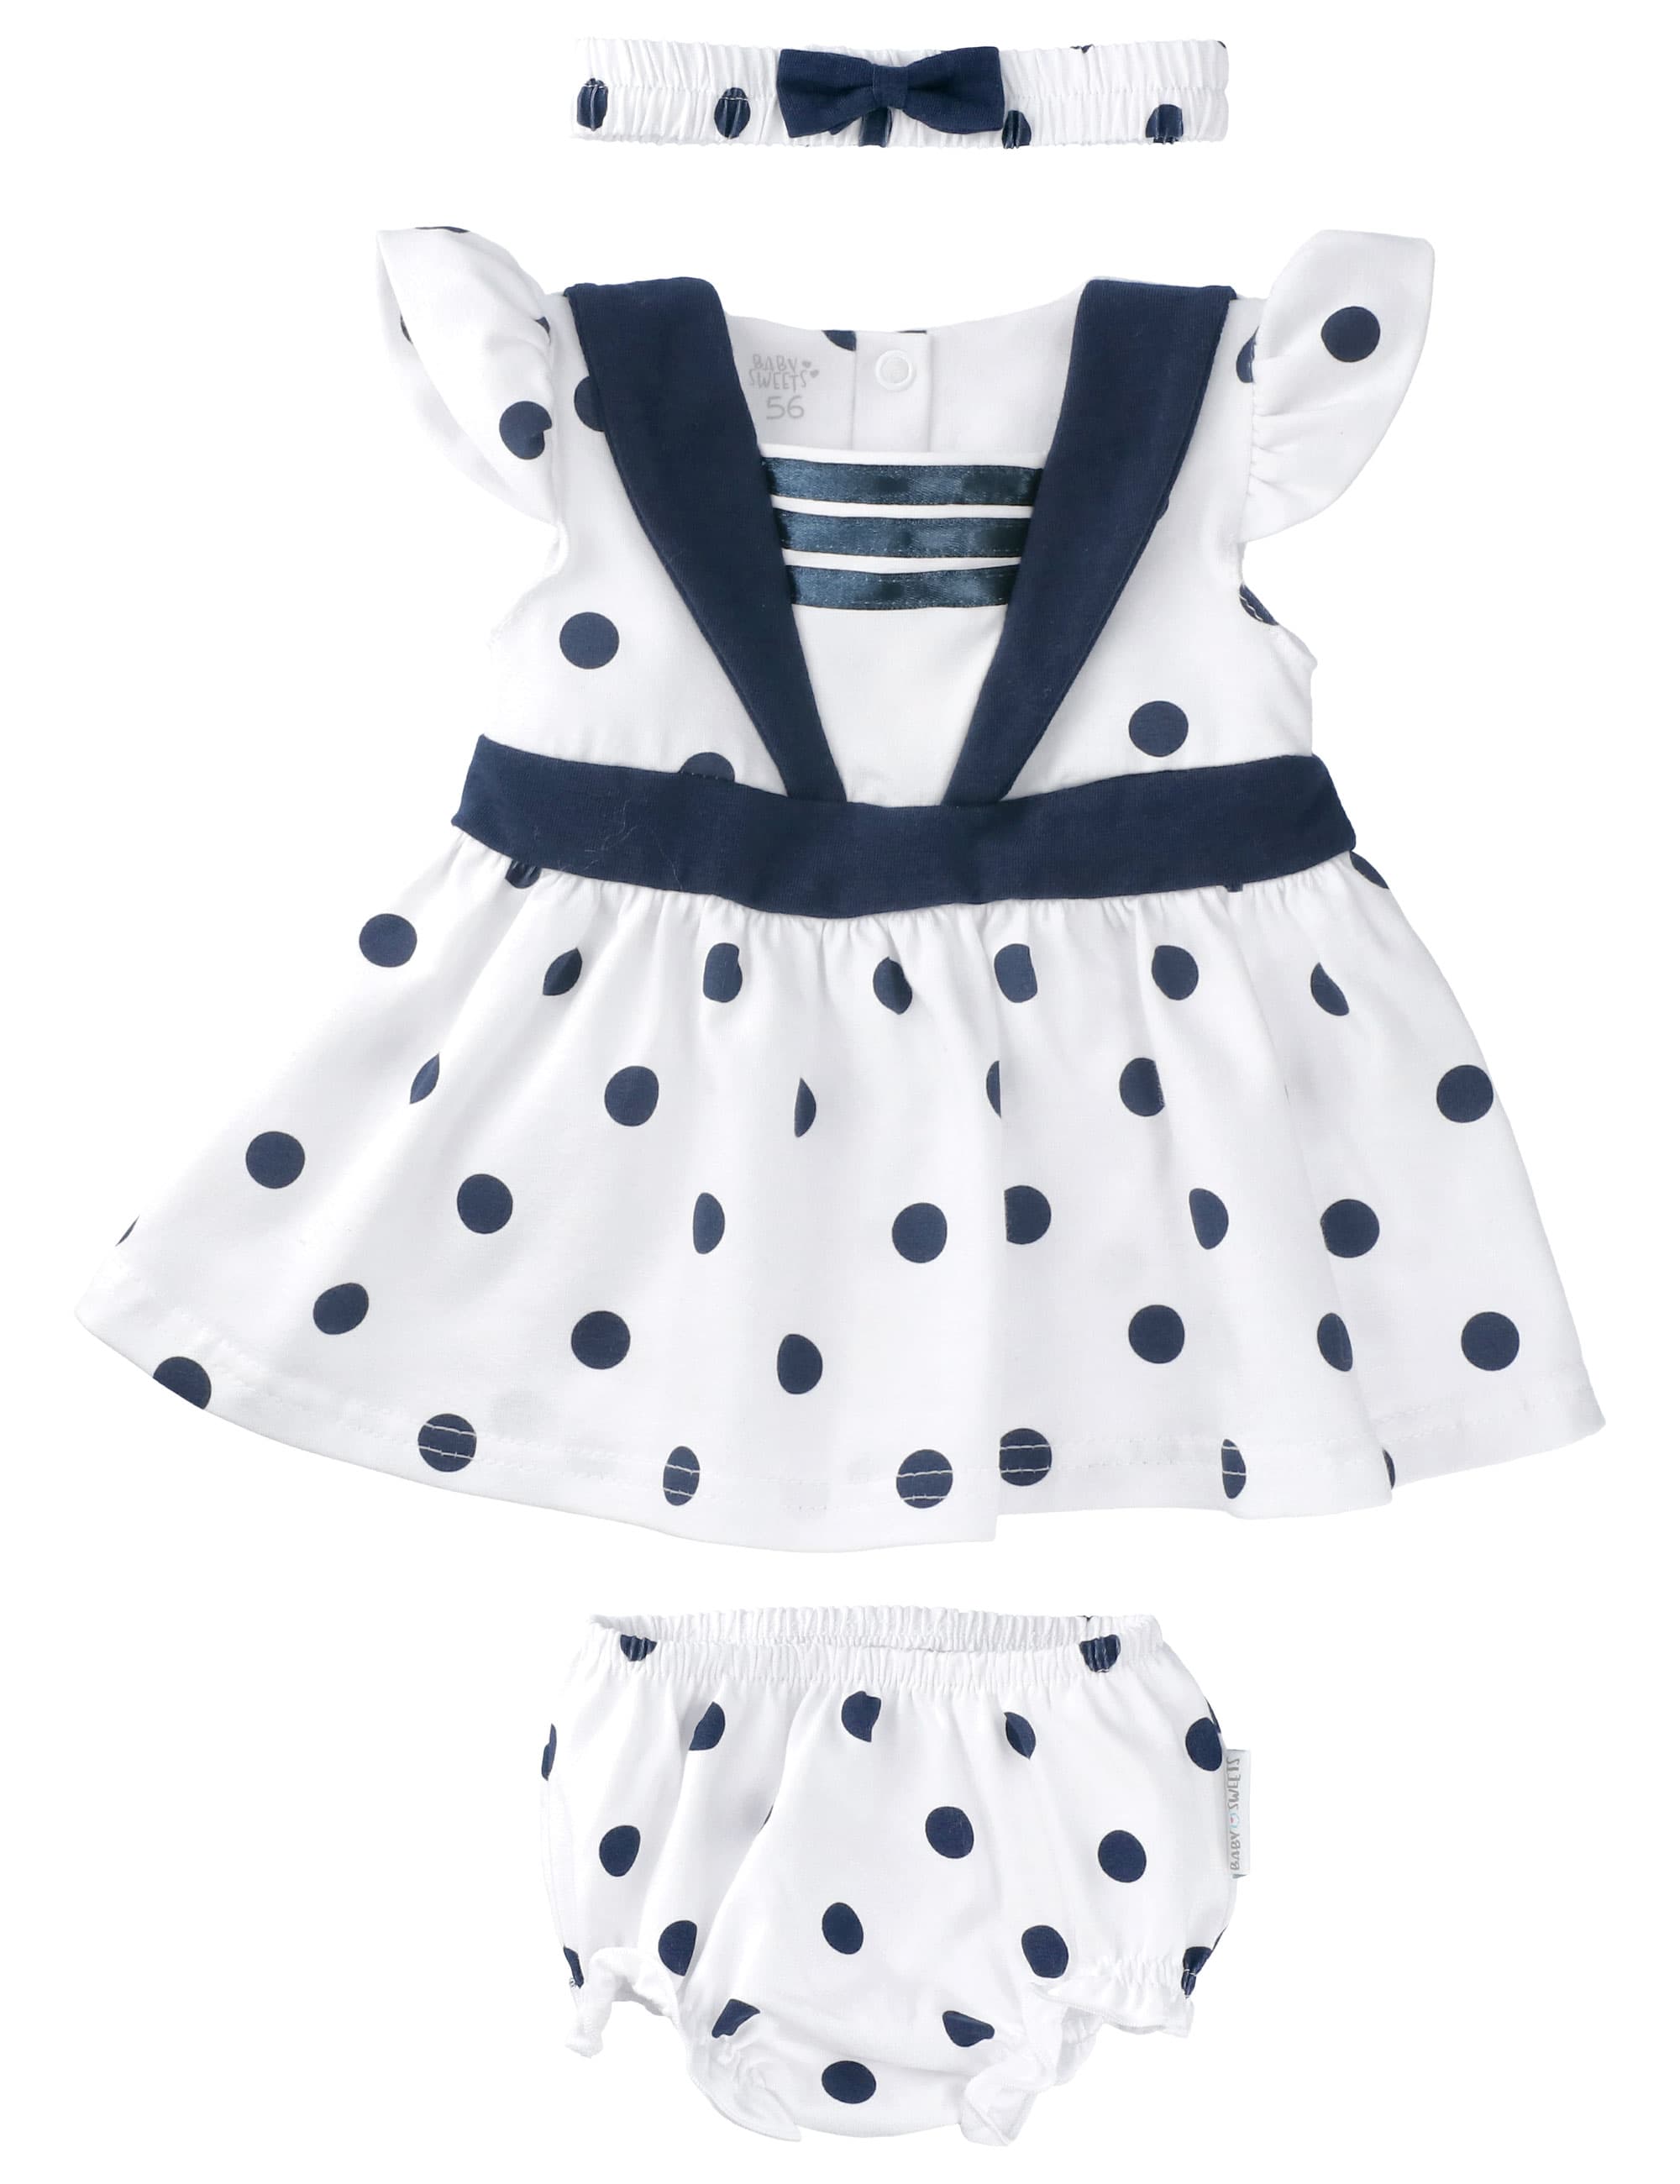 Babyprem Baby Mädchen Rosa Kleid Set Sommer Outfit Neugeborenes 0-3 And 3-6m 